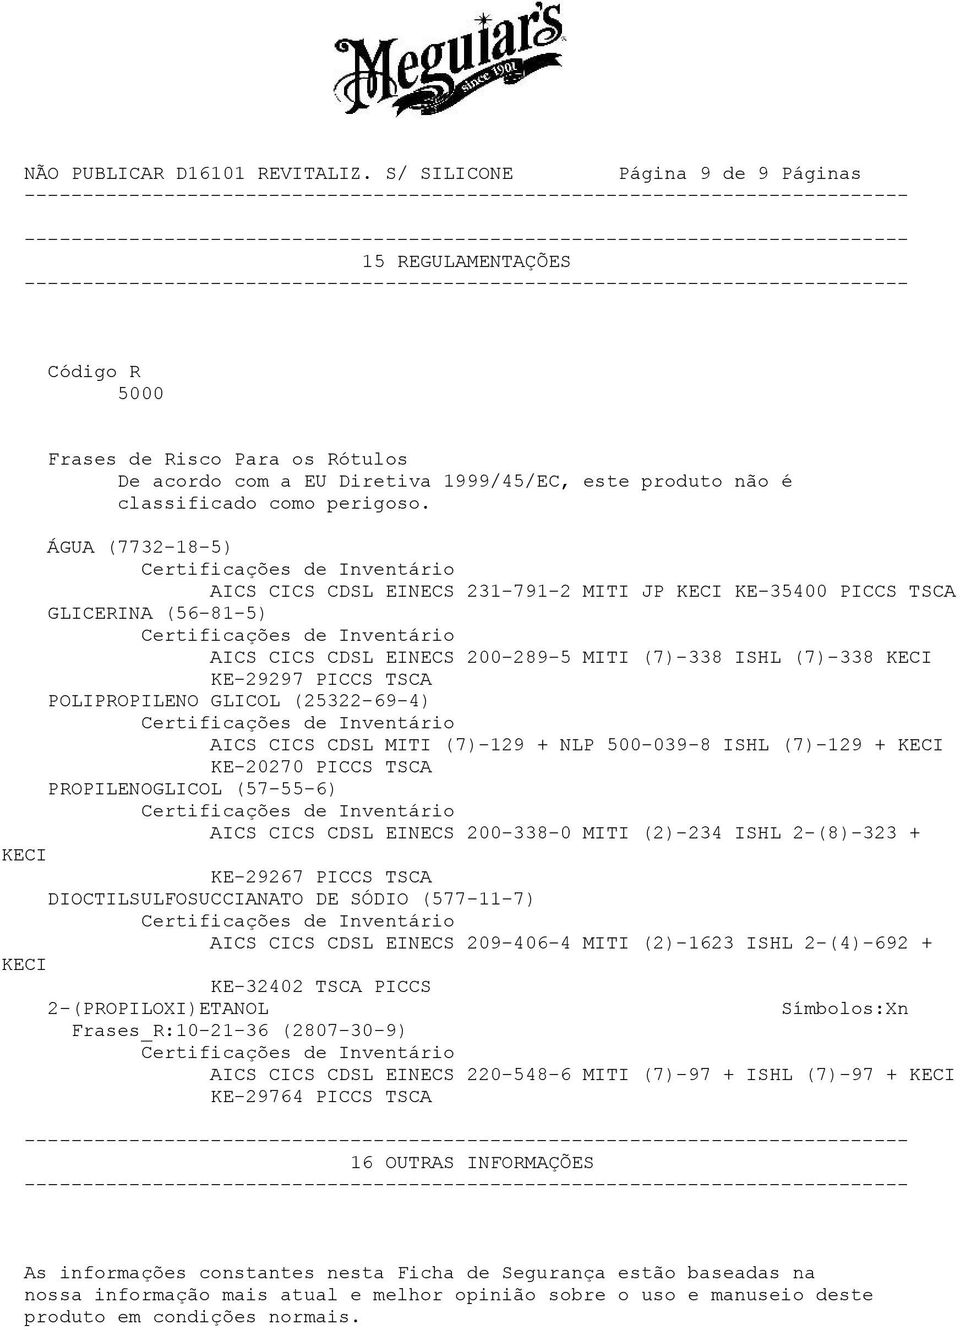 GLICOL (25322-69-4) AICS CICS CDSL MITI (7)-129 + NLP 500-039-8 ISHL (7)-129 + KECI KE-20270 PICCS TSCA PROPILENOGLICOL (57-55-6) AICS CICS CDSL EINECS 200-338-0 MITI (2)-234 ISHL 2-(8)-323 + KECI